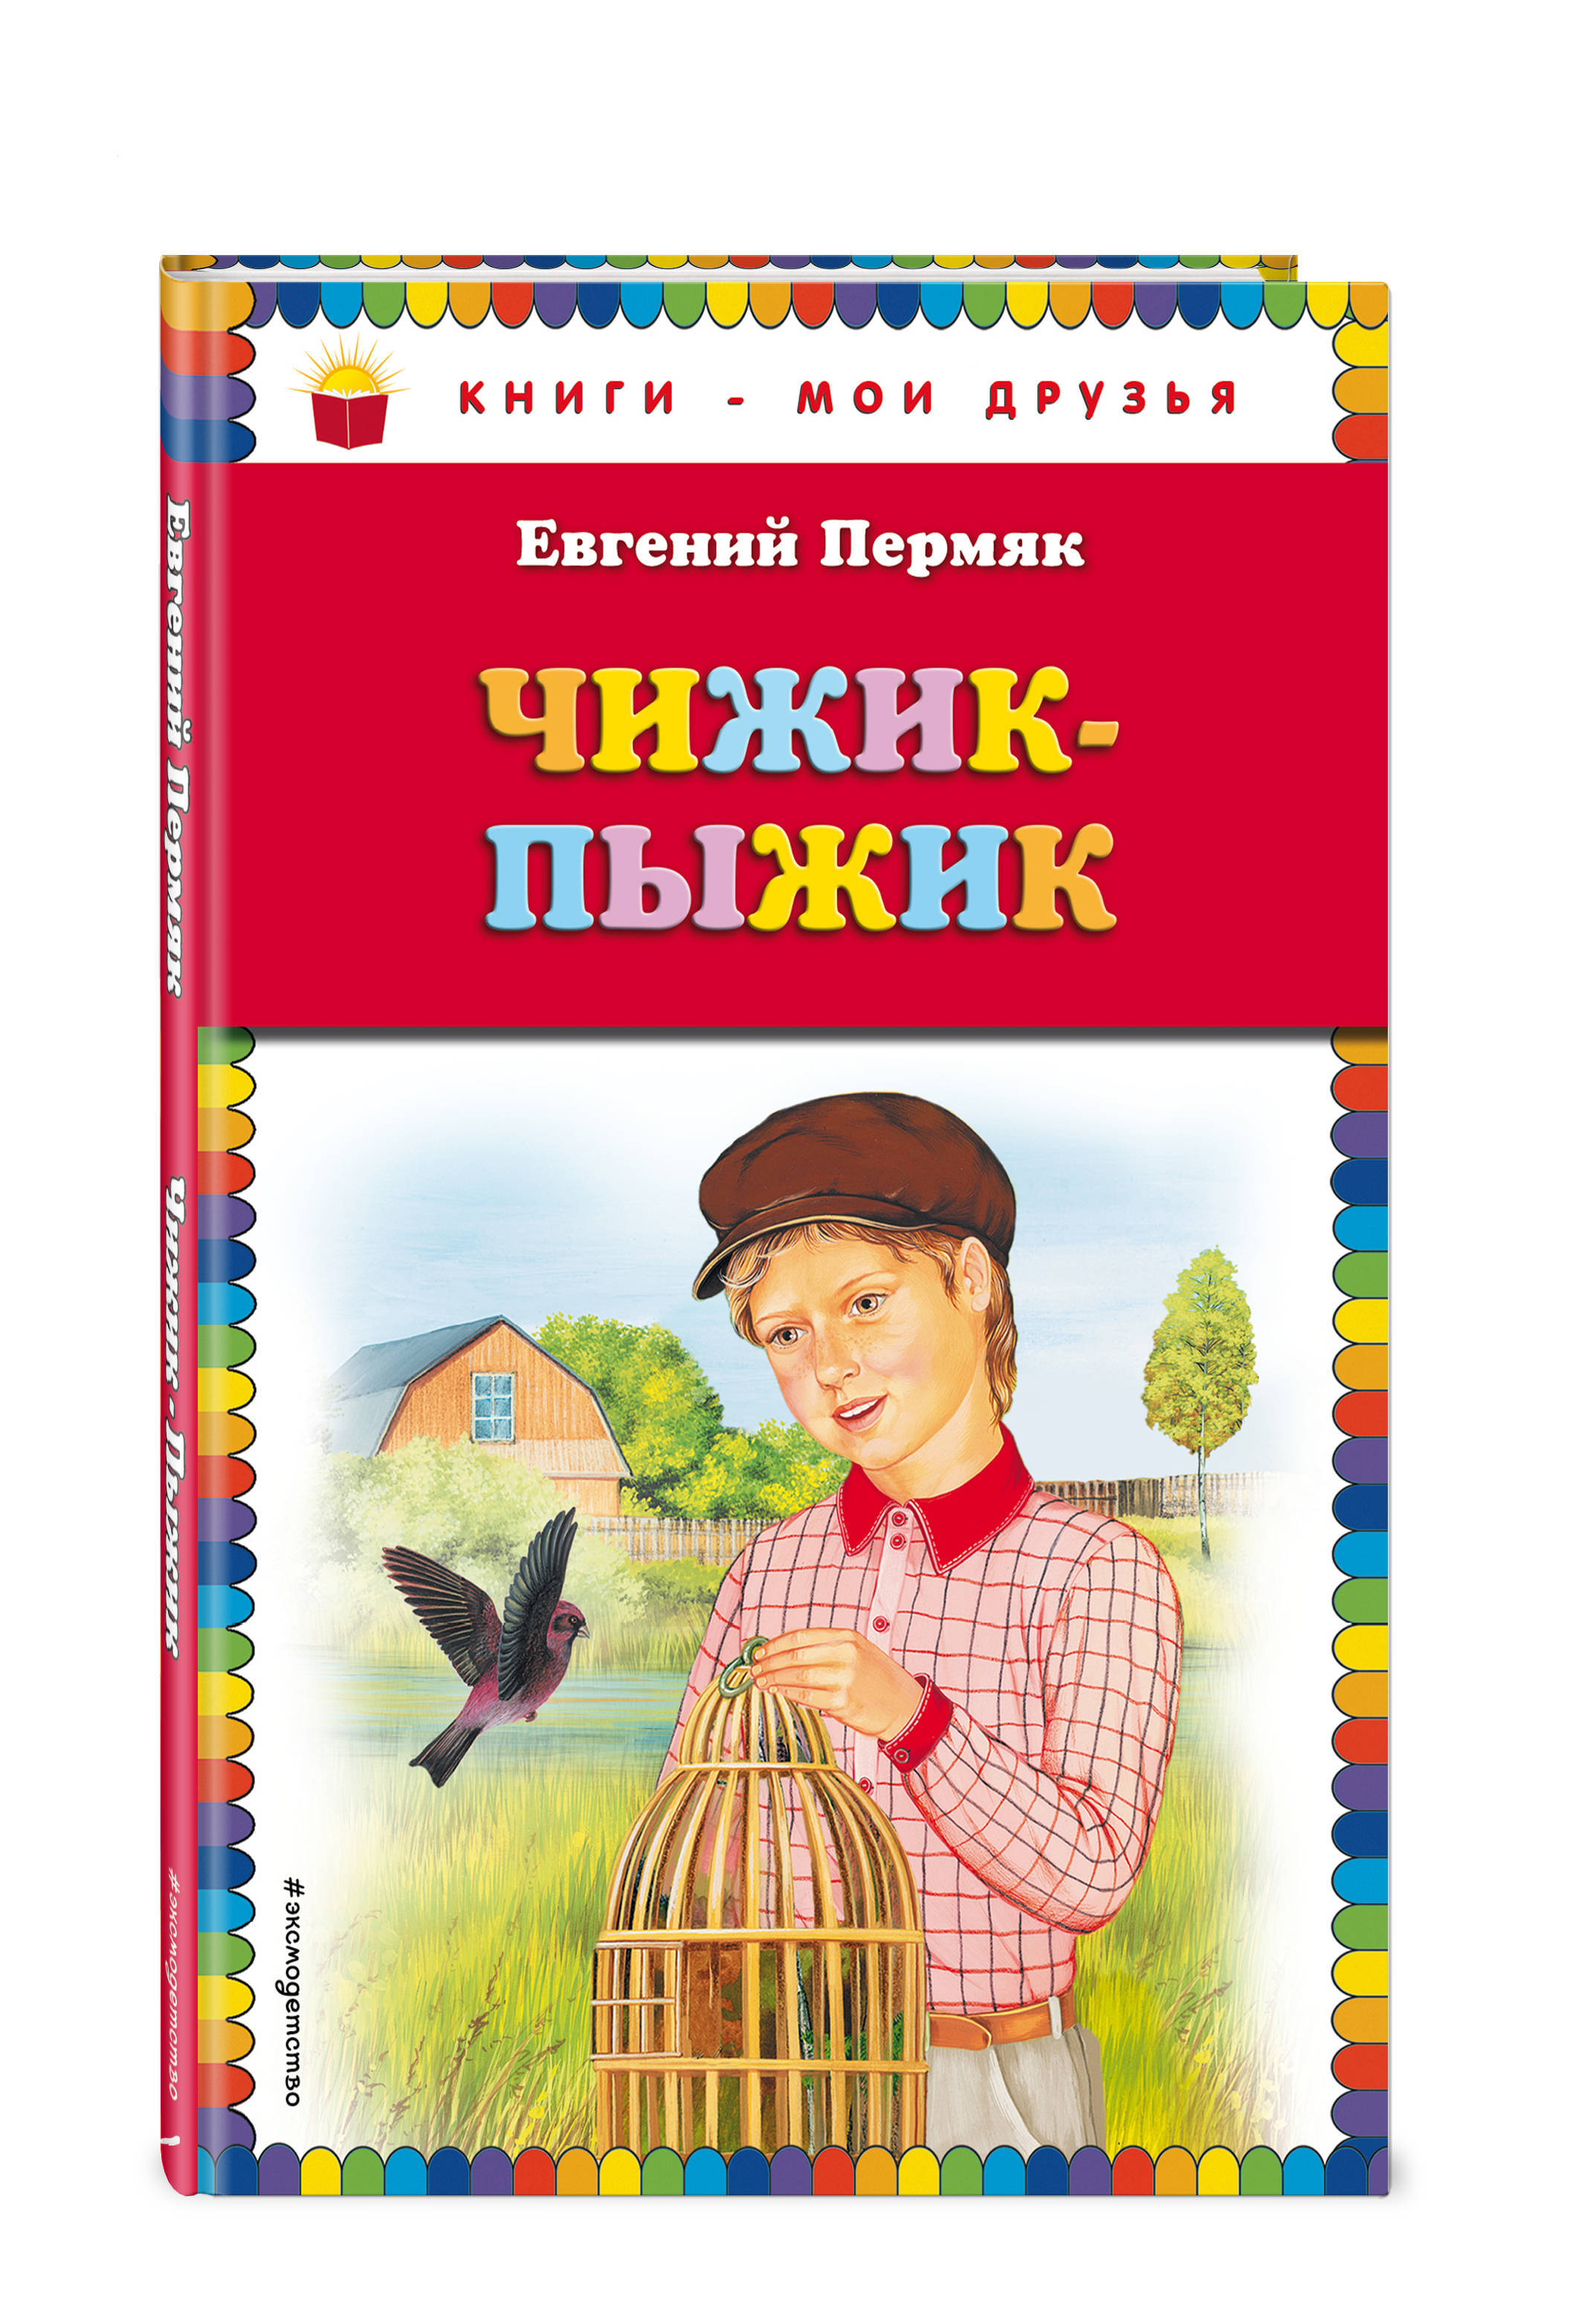 Евгения Андреевич пермяка книги для детей